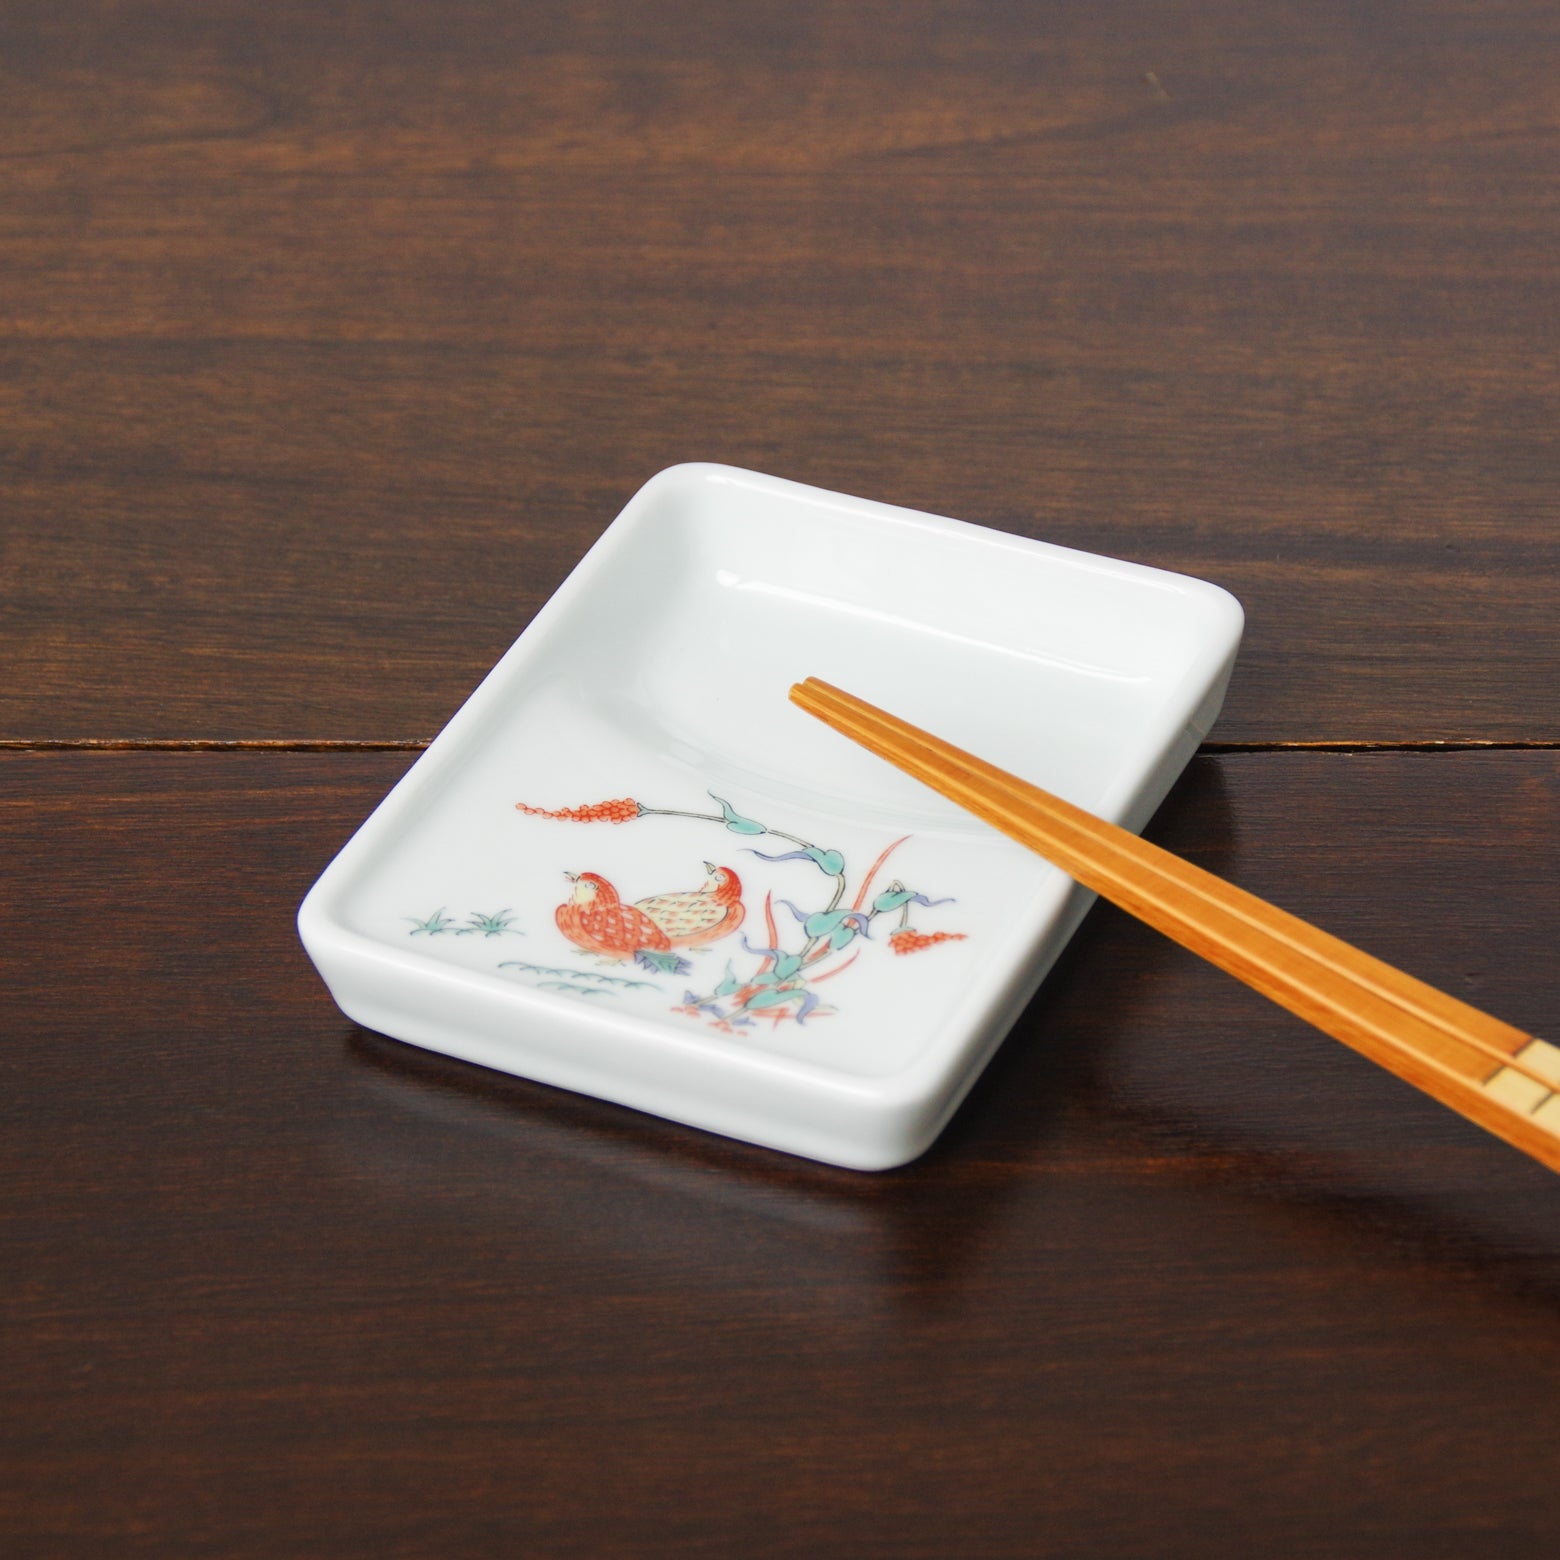 有田焼 錦 硯型醤油皿(うずら) 10cm